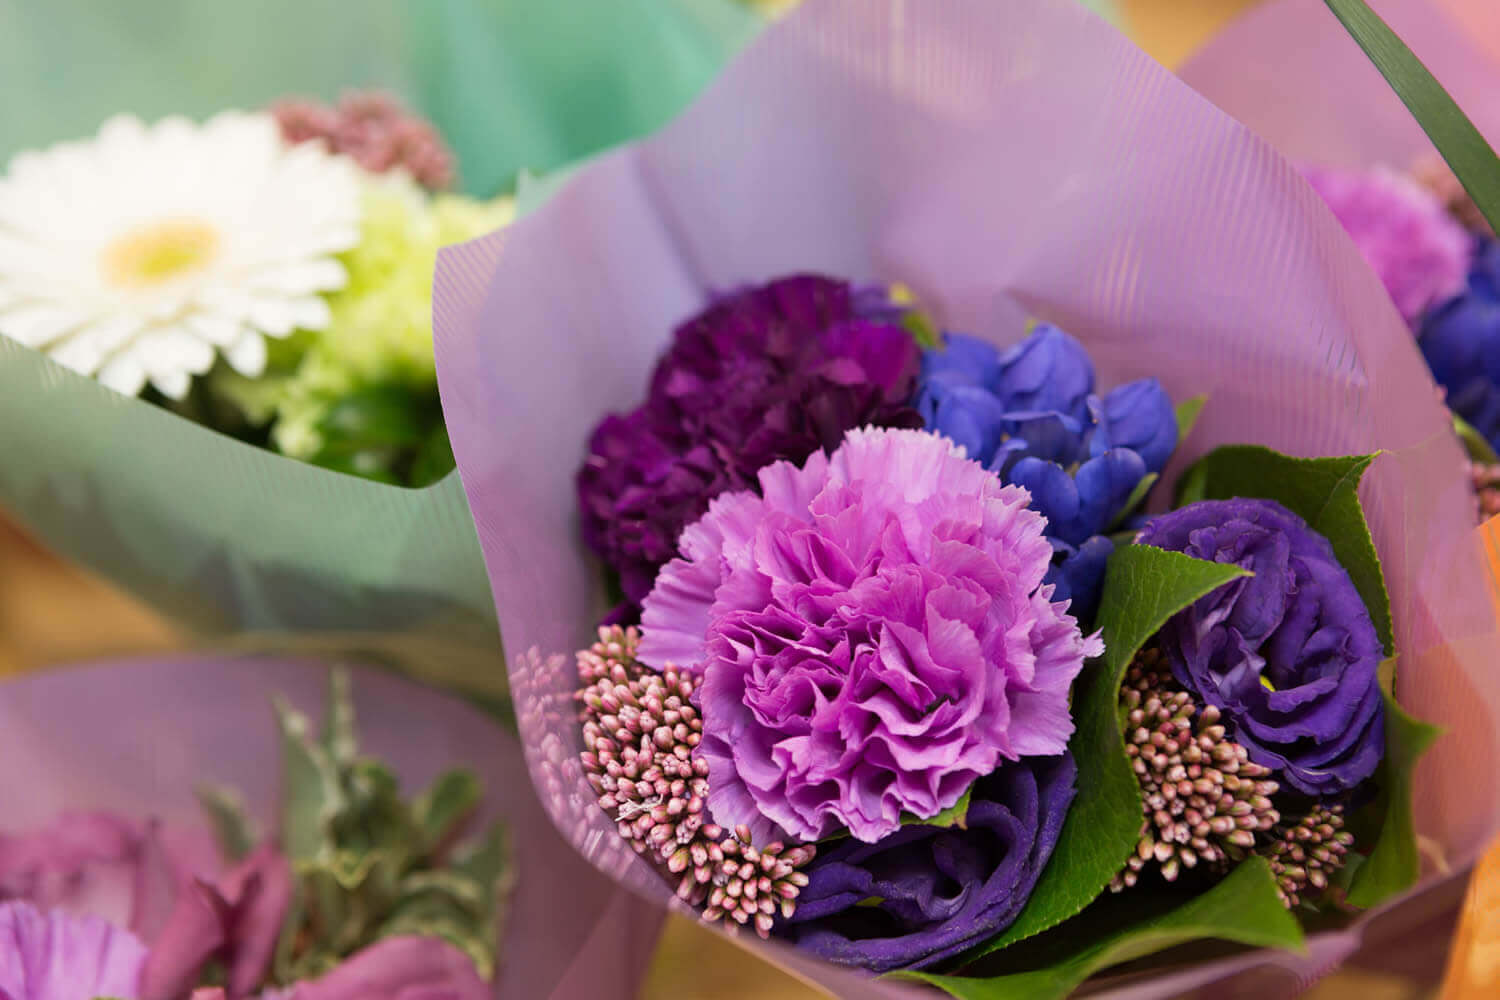 ムーンダスト とは 世界で唯一の青いカーネーションの魅力 花や花束の宅配 フラワーギフト通販なら花キューピット 贈り物 プレゼントで花を贈ろう